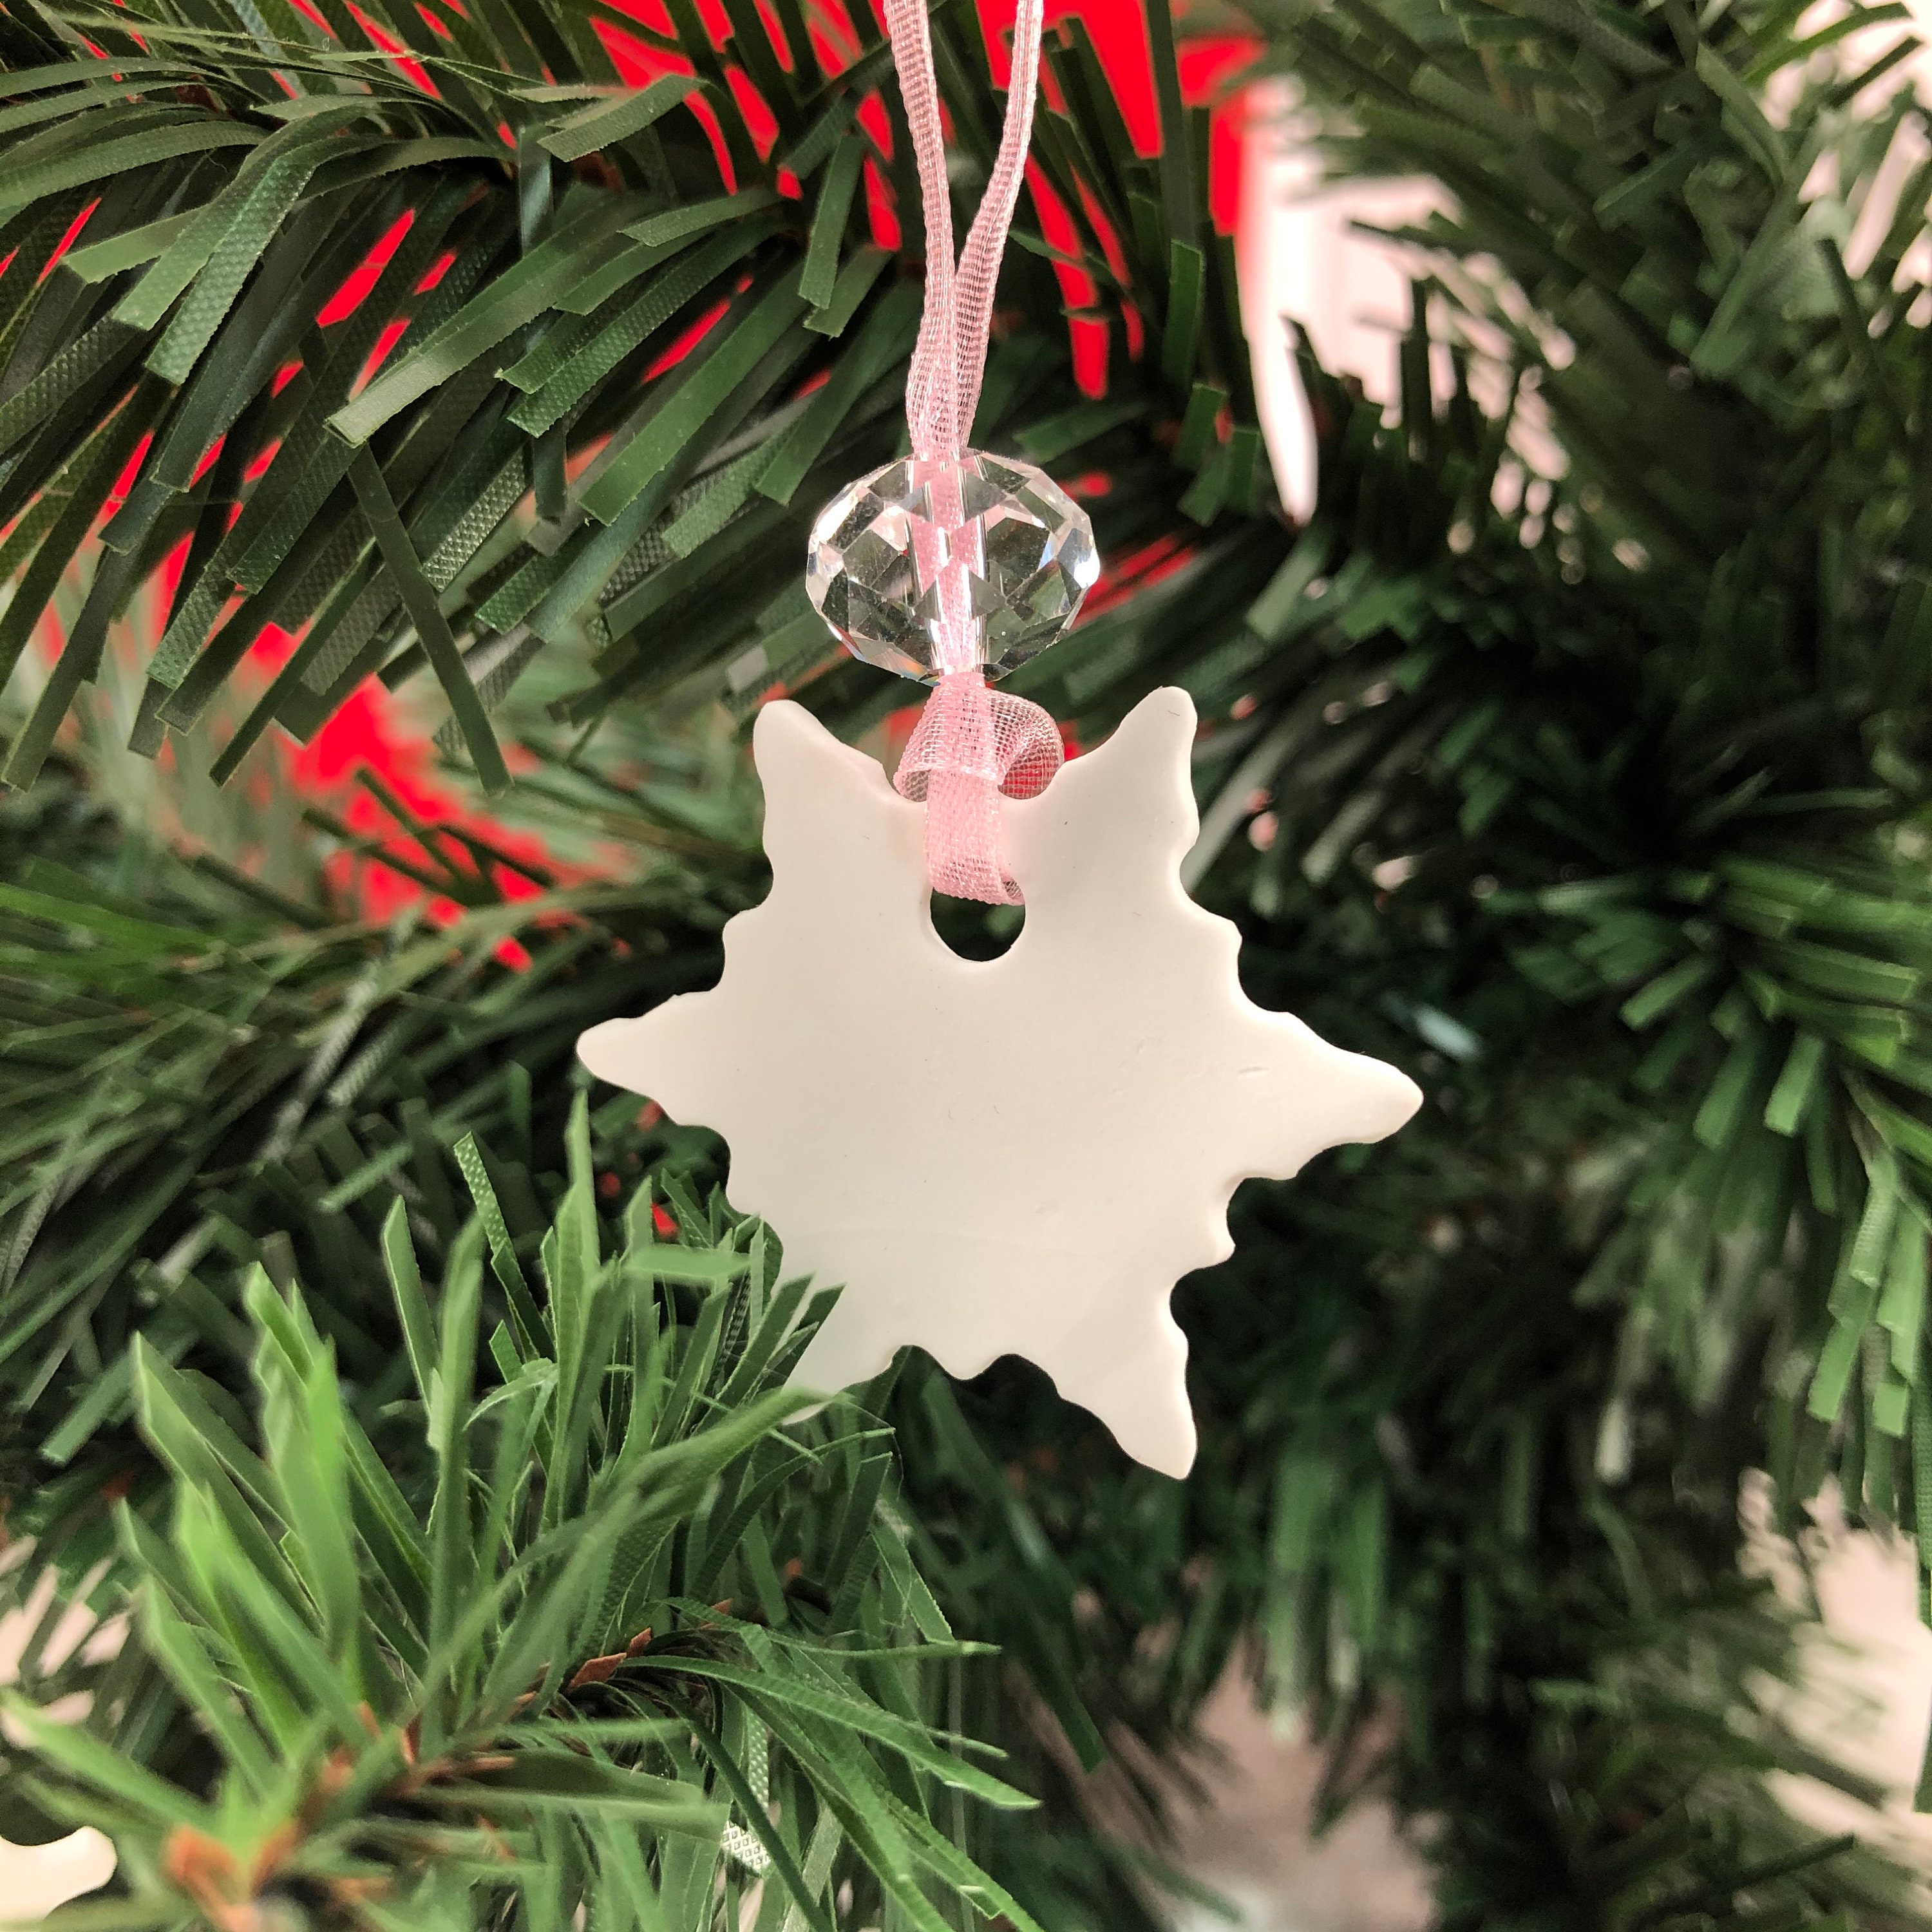 Swarovski Exclusive Snowflake Christmas Ornament